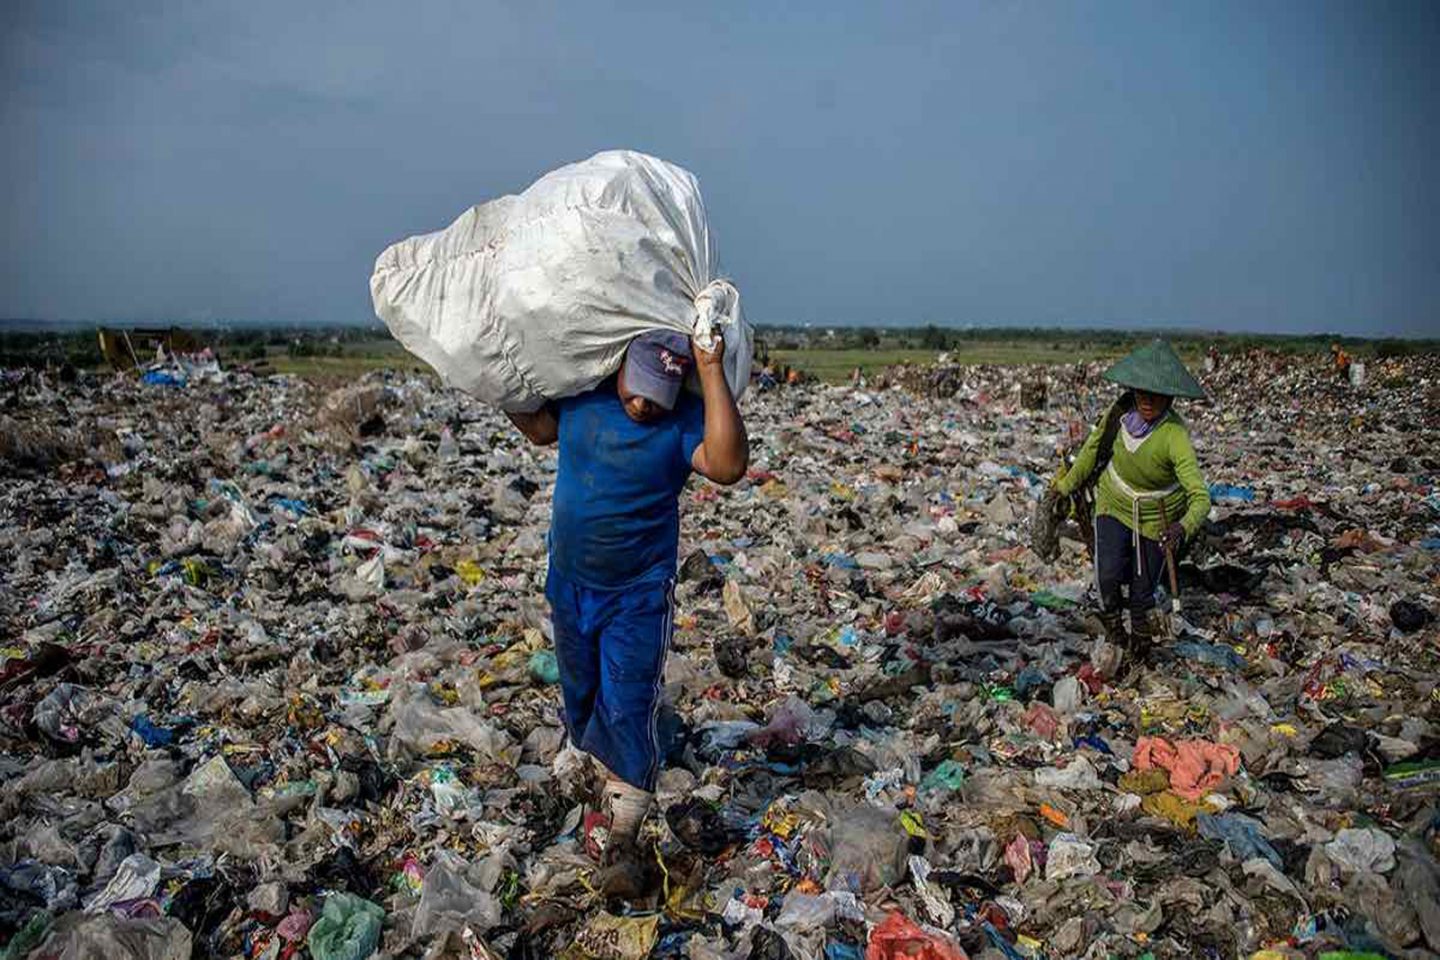 penanganan sampah plastik yang dapat kita lakukan adalah dengan memanfaatkan sampah plastik bekas